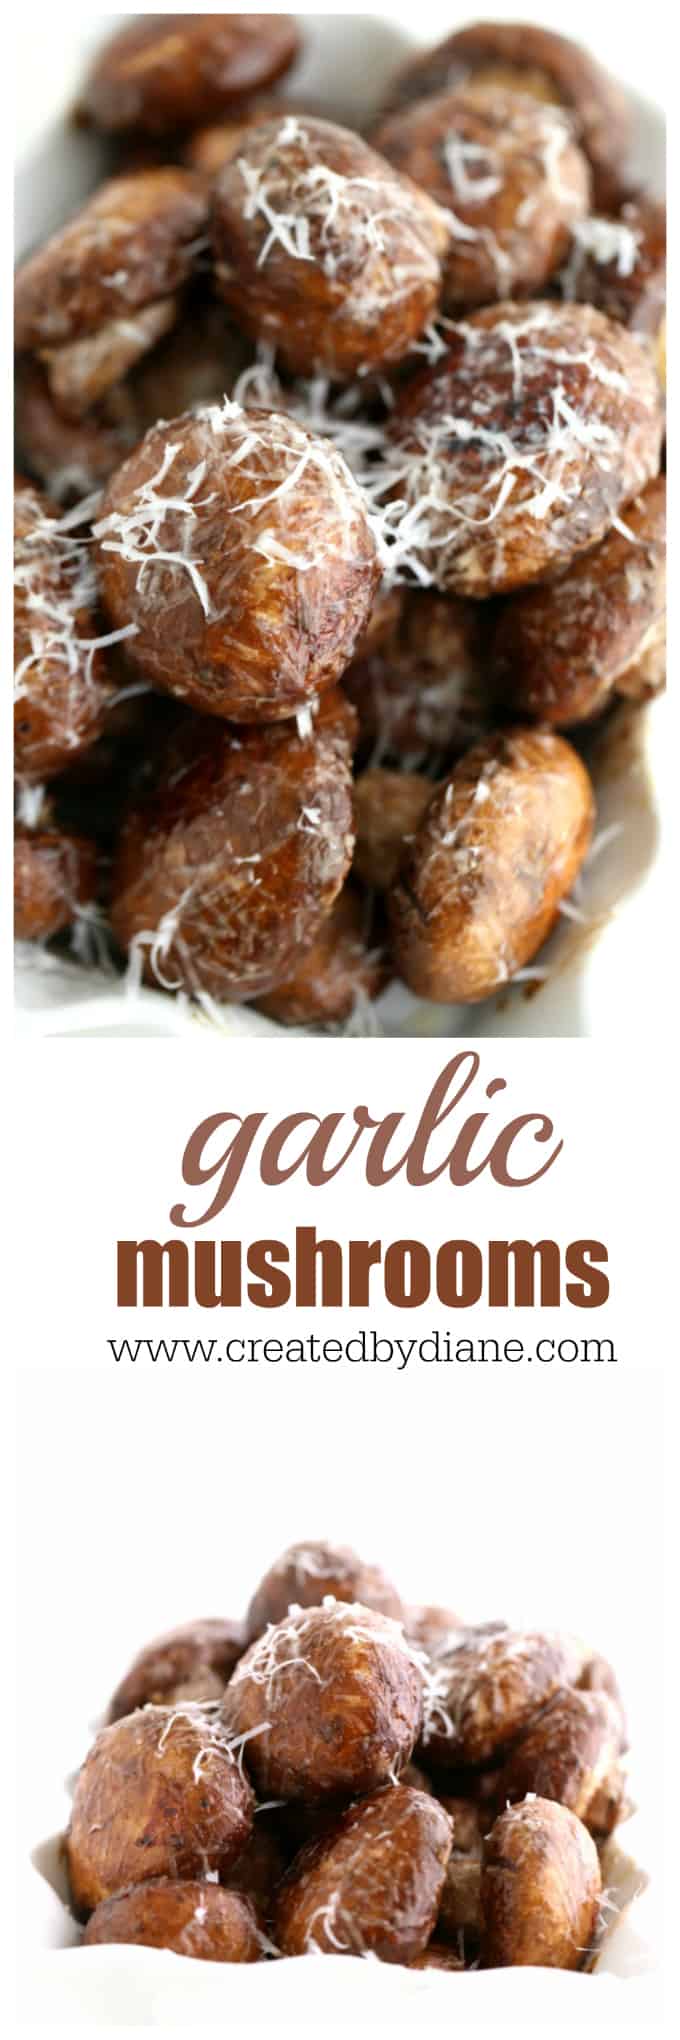 garlic mushrooms, low carb, gluten free, healthy, diet food, www.createdbydiane.com